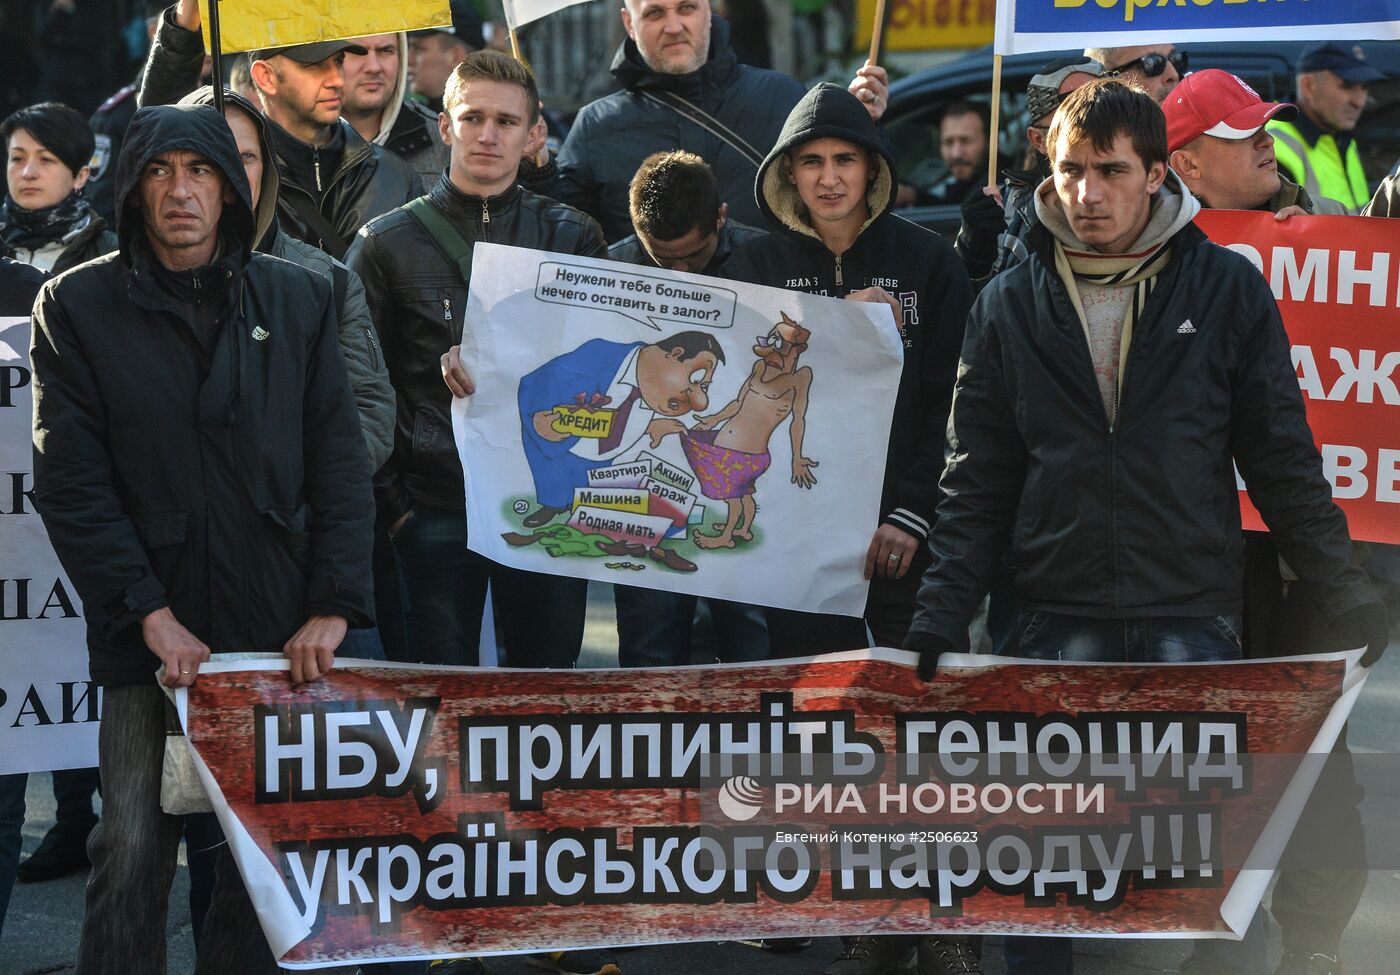 Акция "Кредитный Майдан" в Киеве